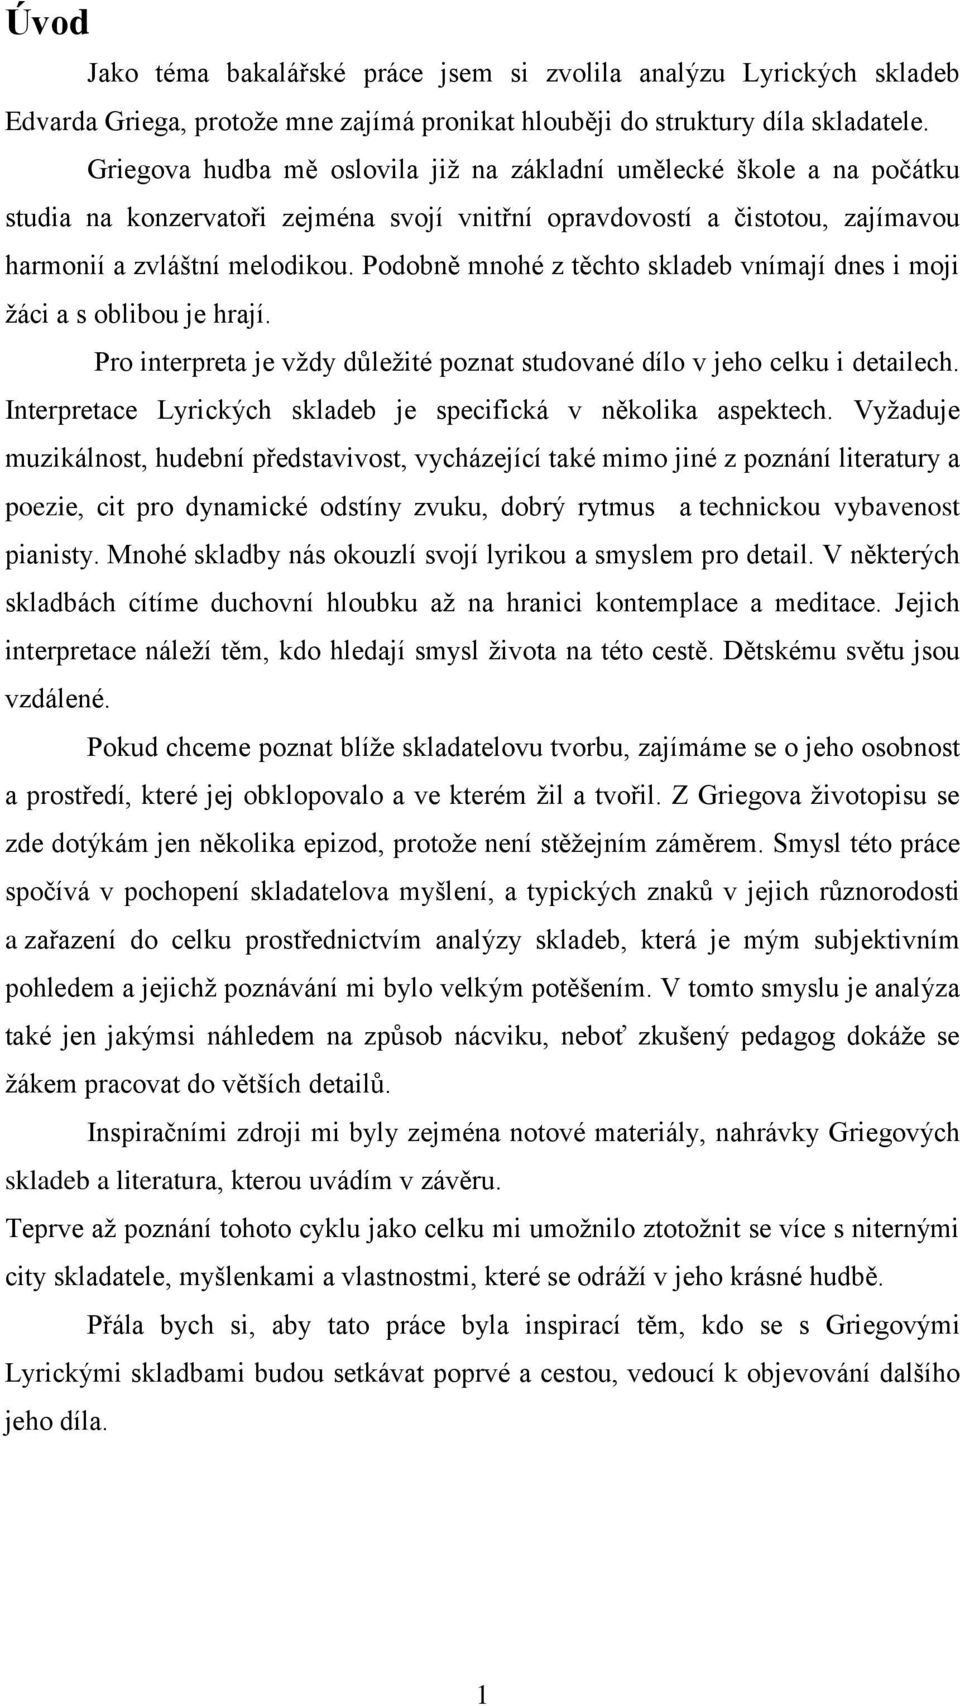 Edvard Grieg Pedagogická a interpretační analýza Lyrických skladeb - PDF  Stažení zdarma